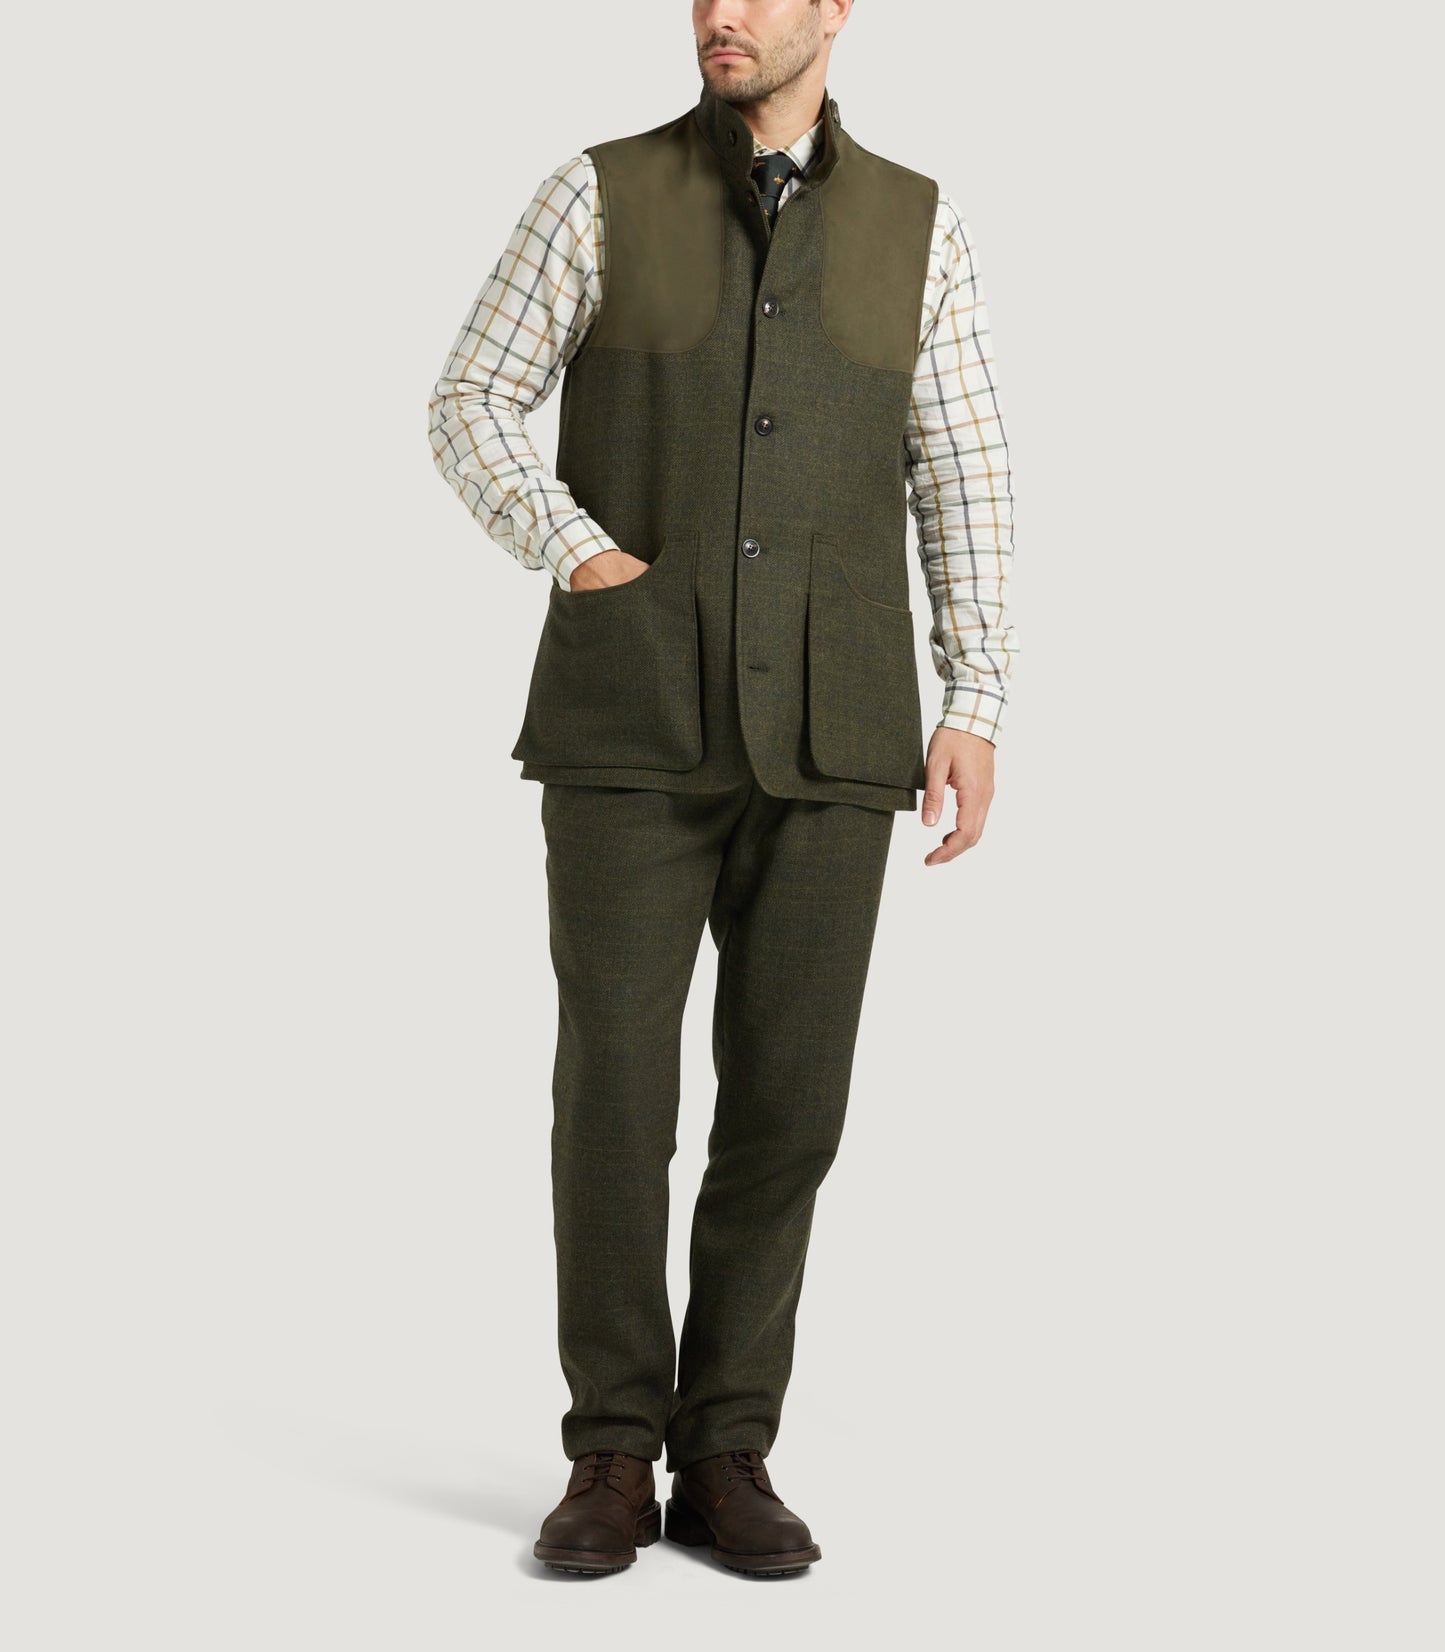 Men's Technical Tweed High Collar Sporting Vest